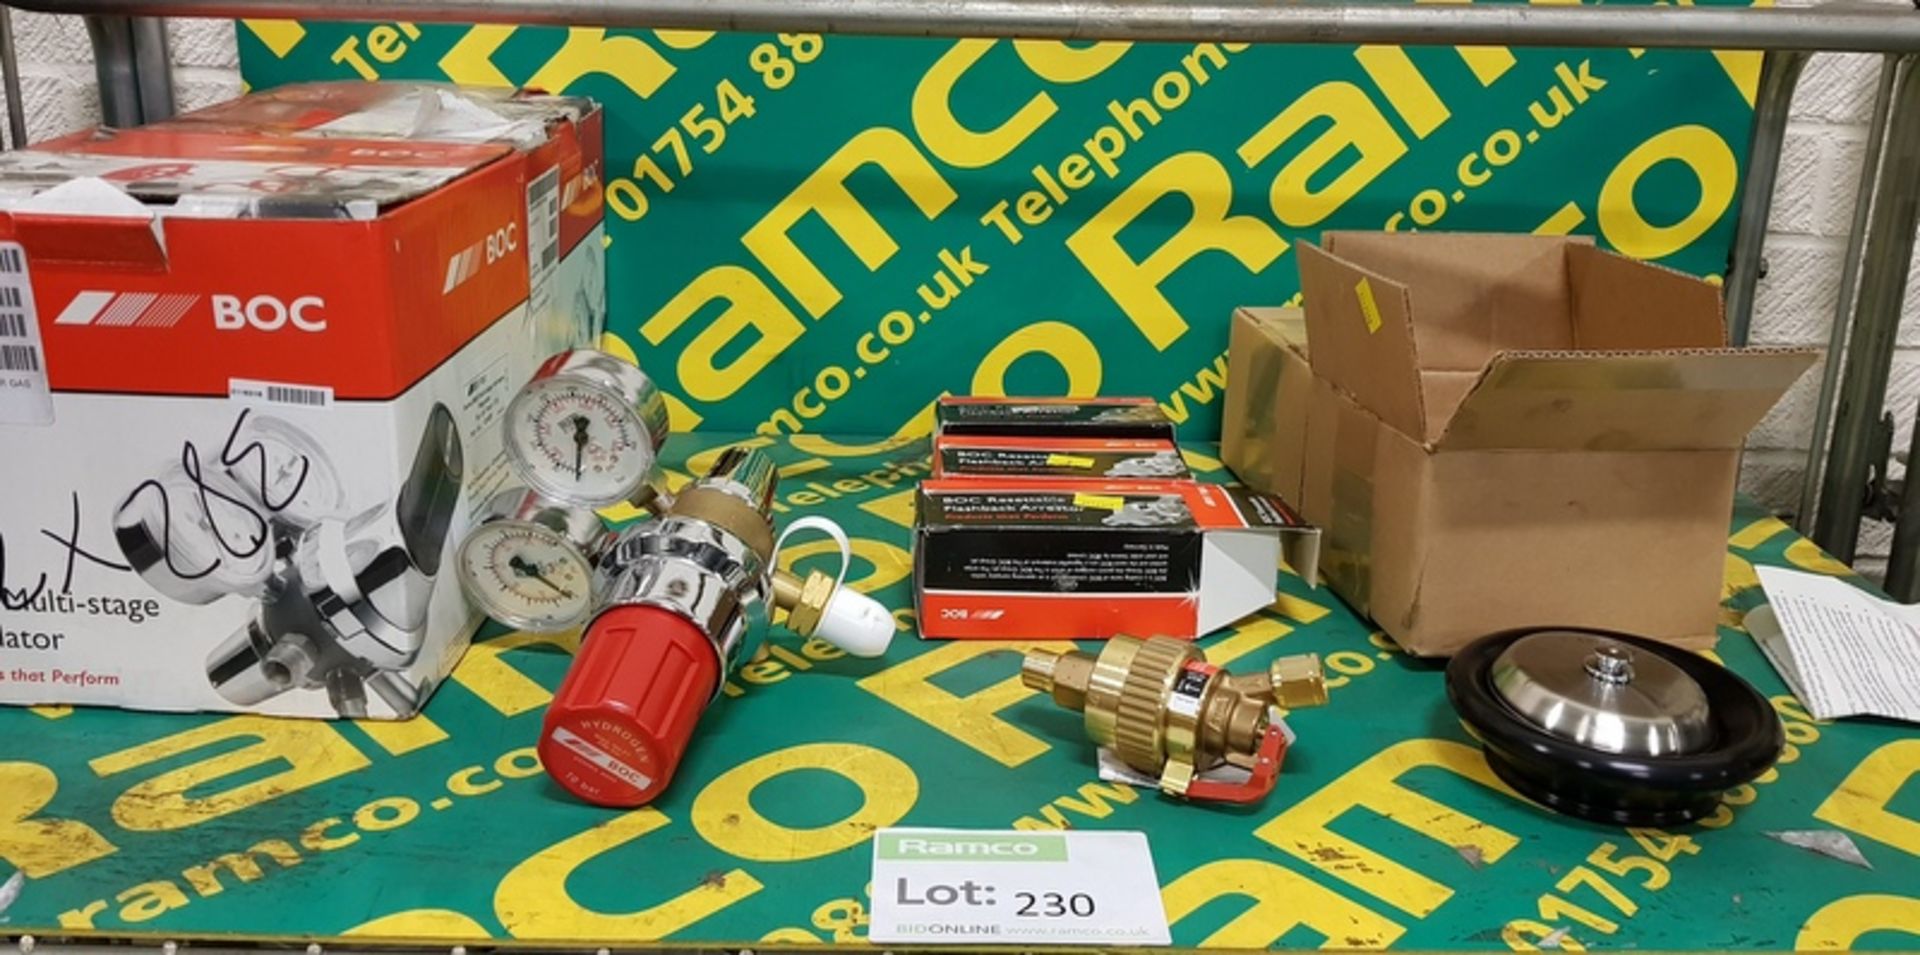 2x Boc Series 8500- Multi -Stage Gas Regulators, 3x Boc P/N 415 40-Flashback Arrestors 2x